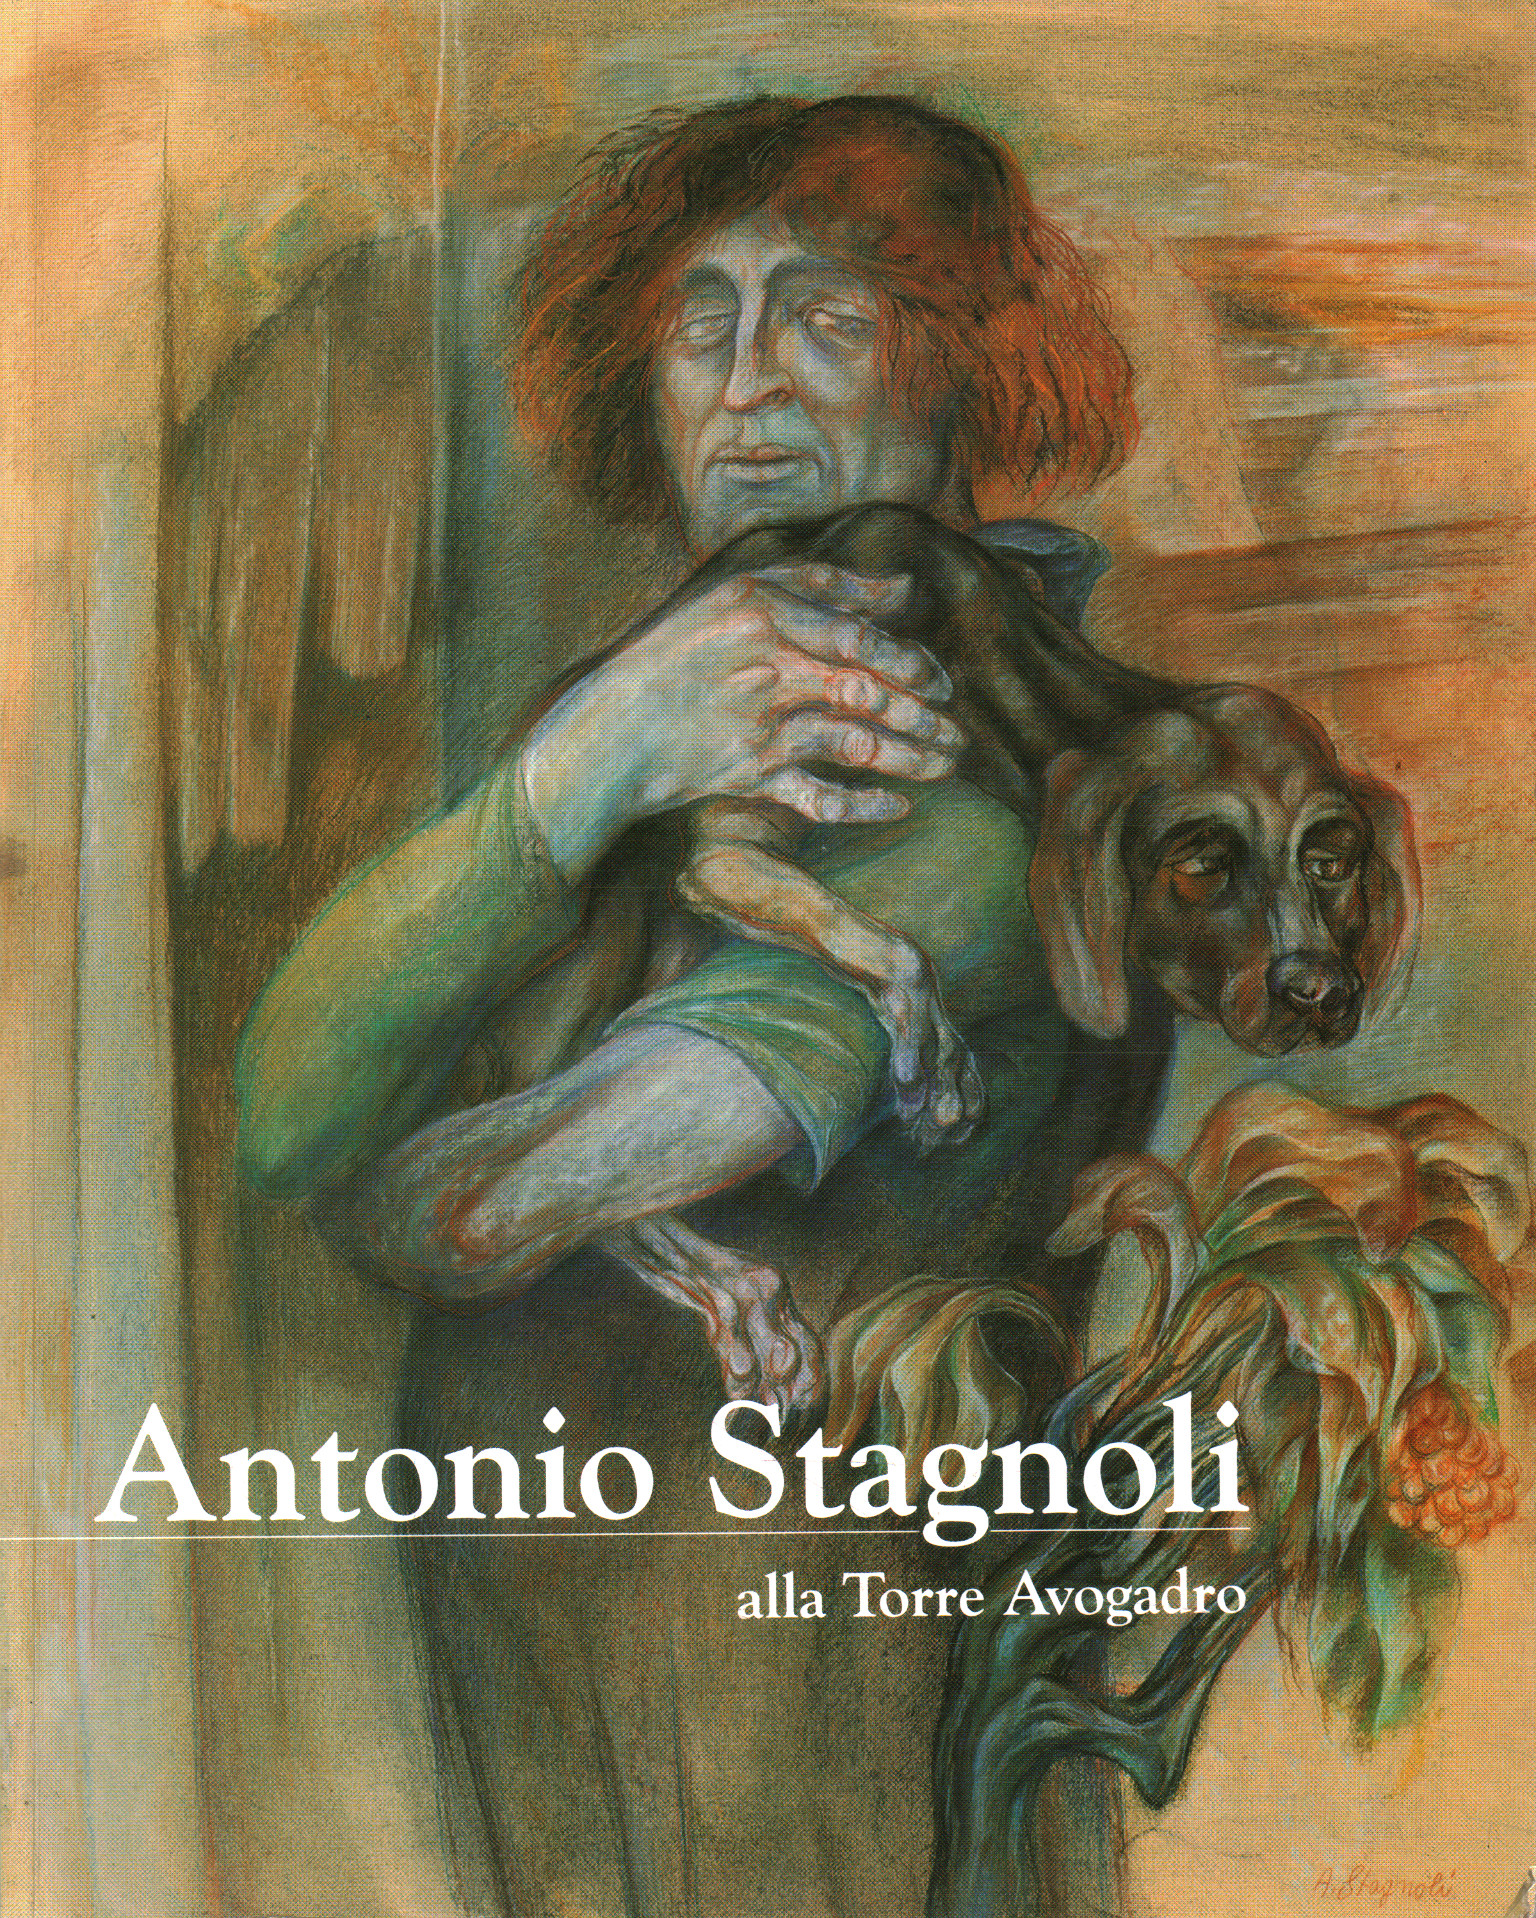 Antonio Stagnoli en la Torre Avogadro